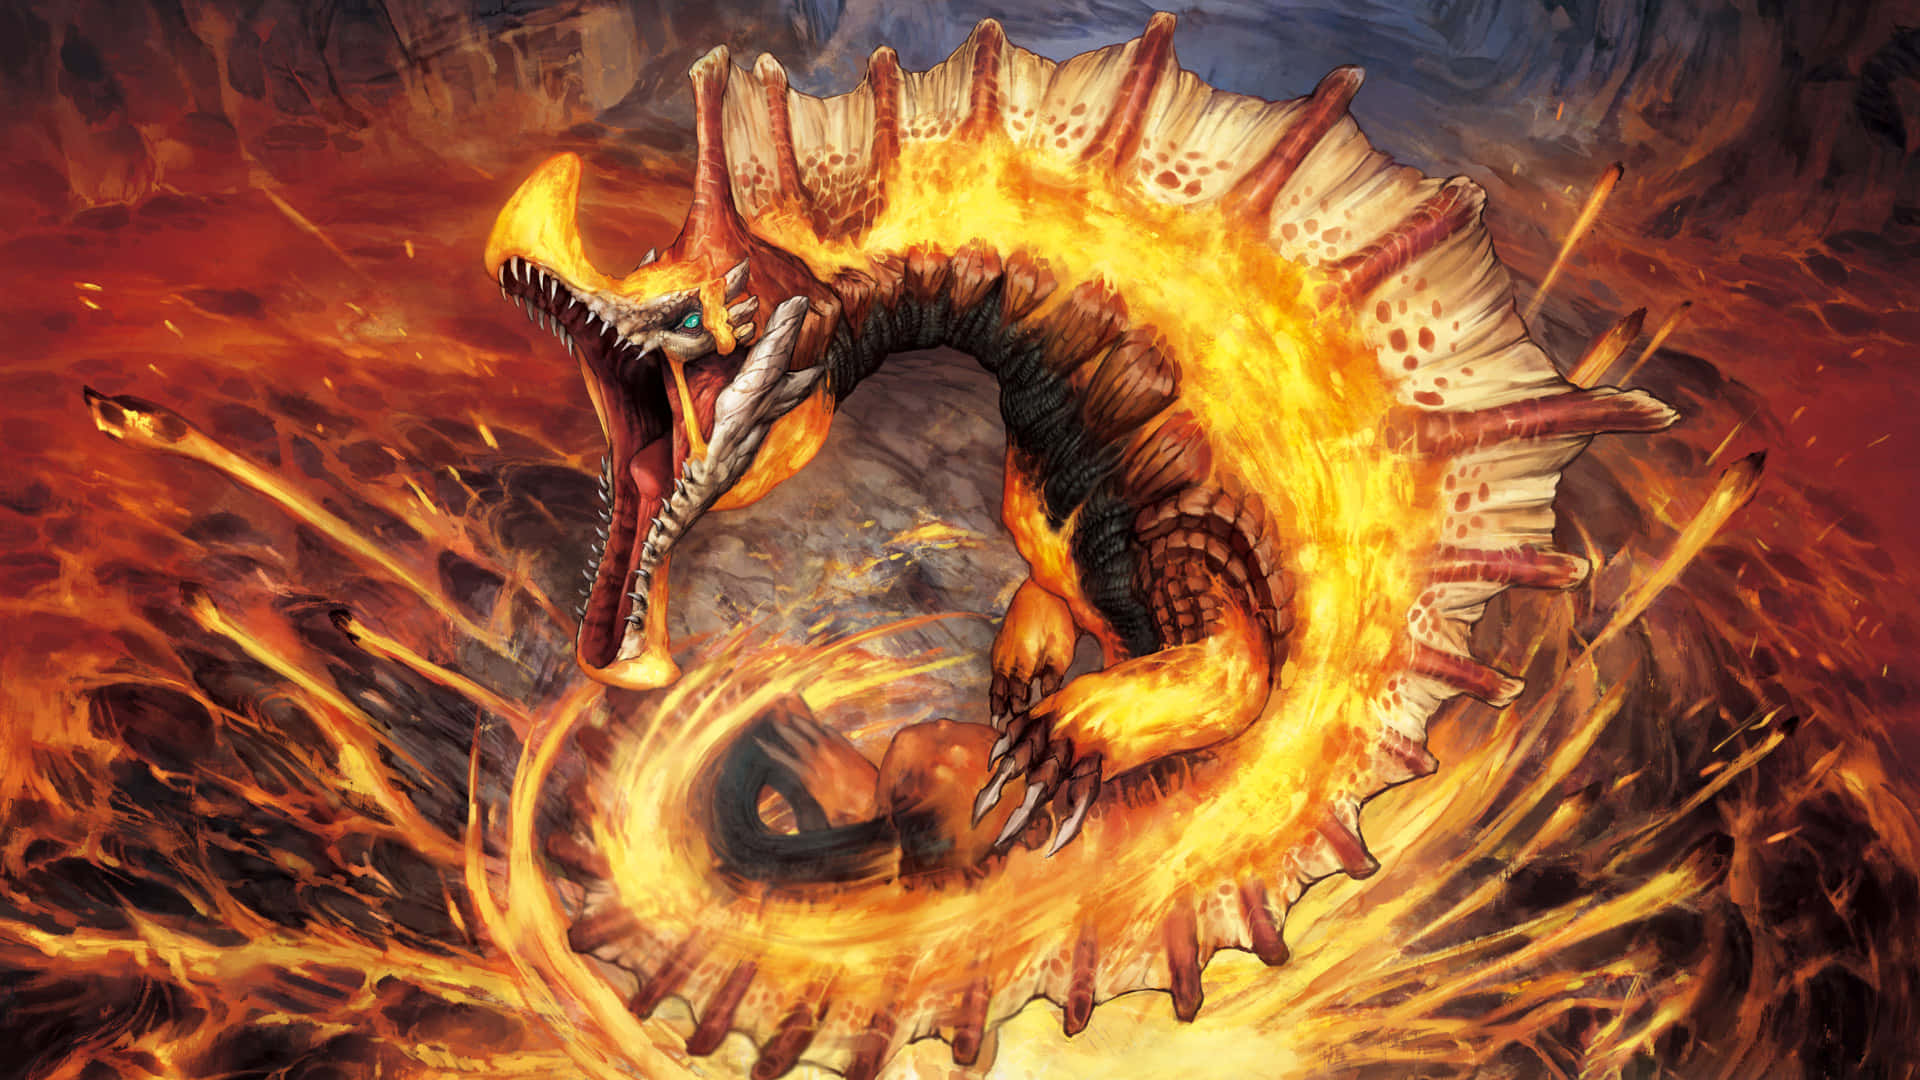 Ferocious Monster Battle in Monster Hunter World Wallpaper